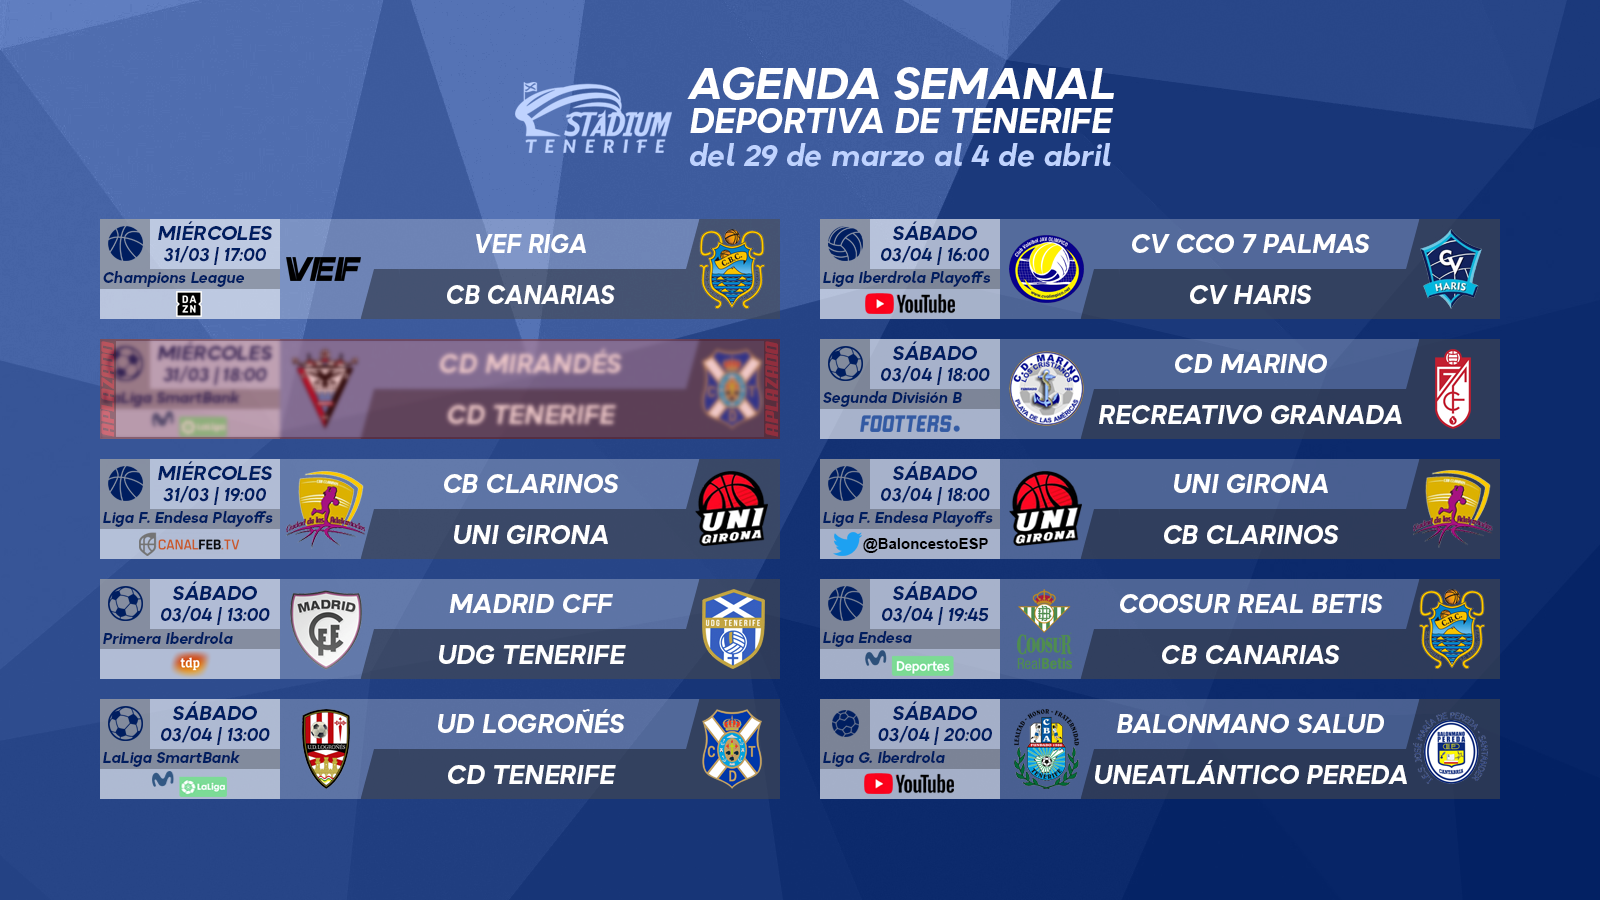 Agenda Semanal Deportiva de Tenerife (29 de marzo al 4 de abril)